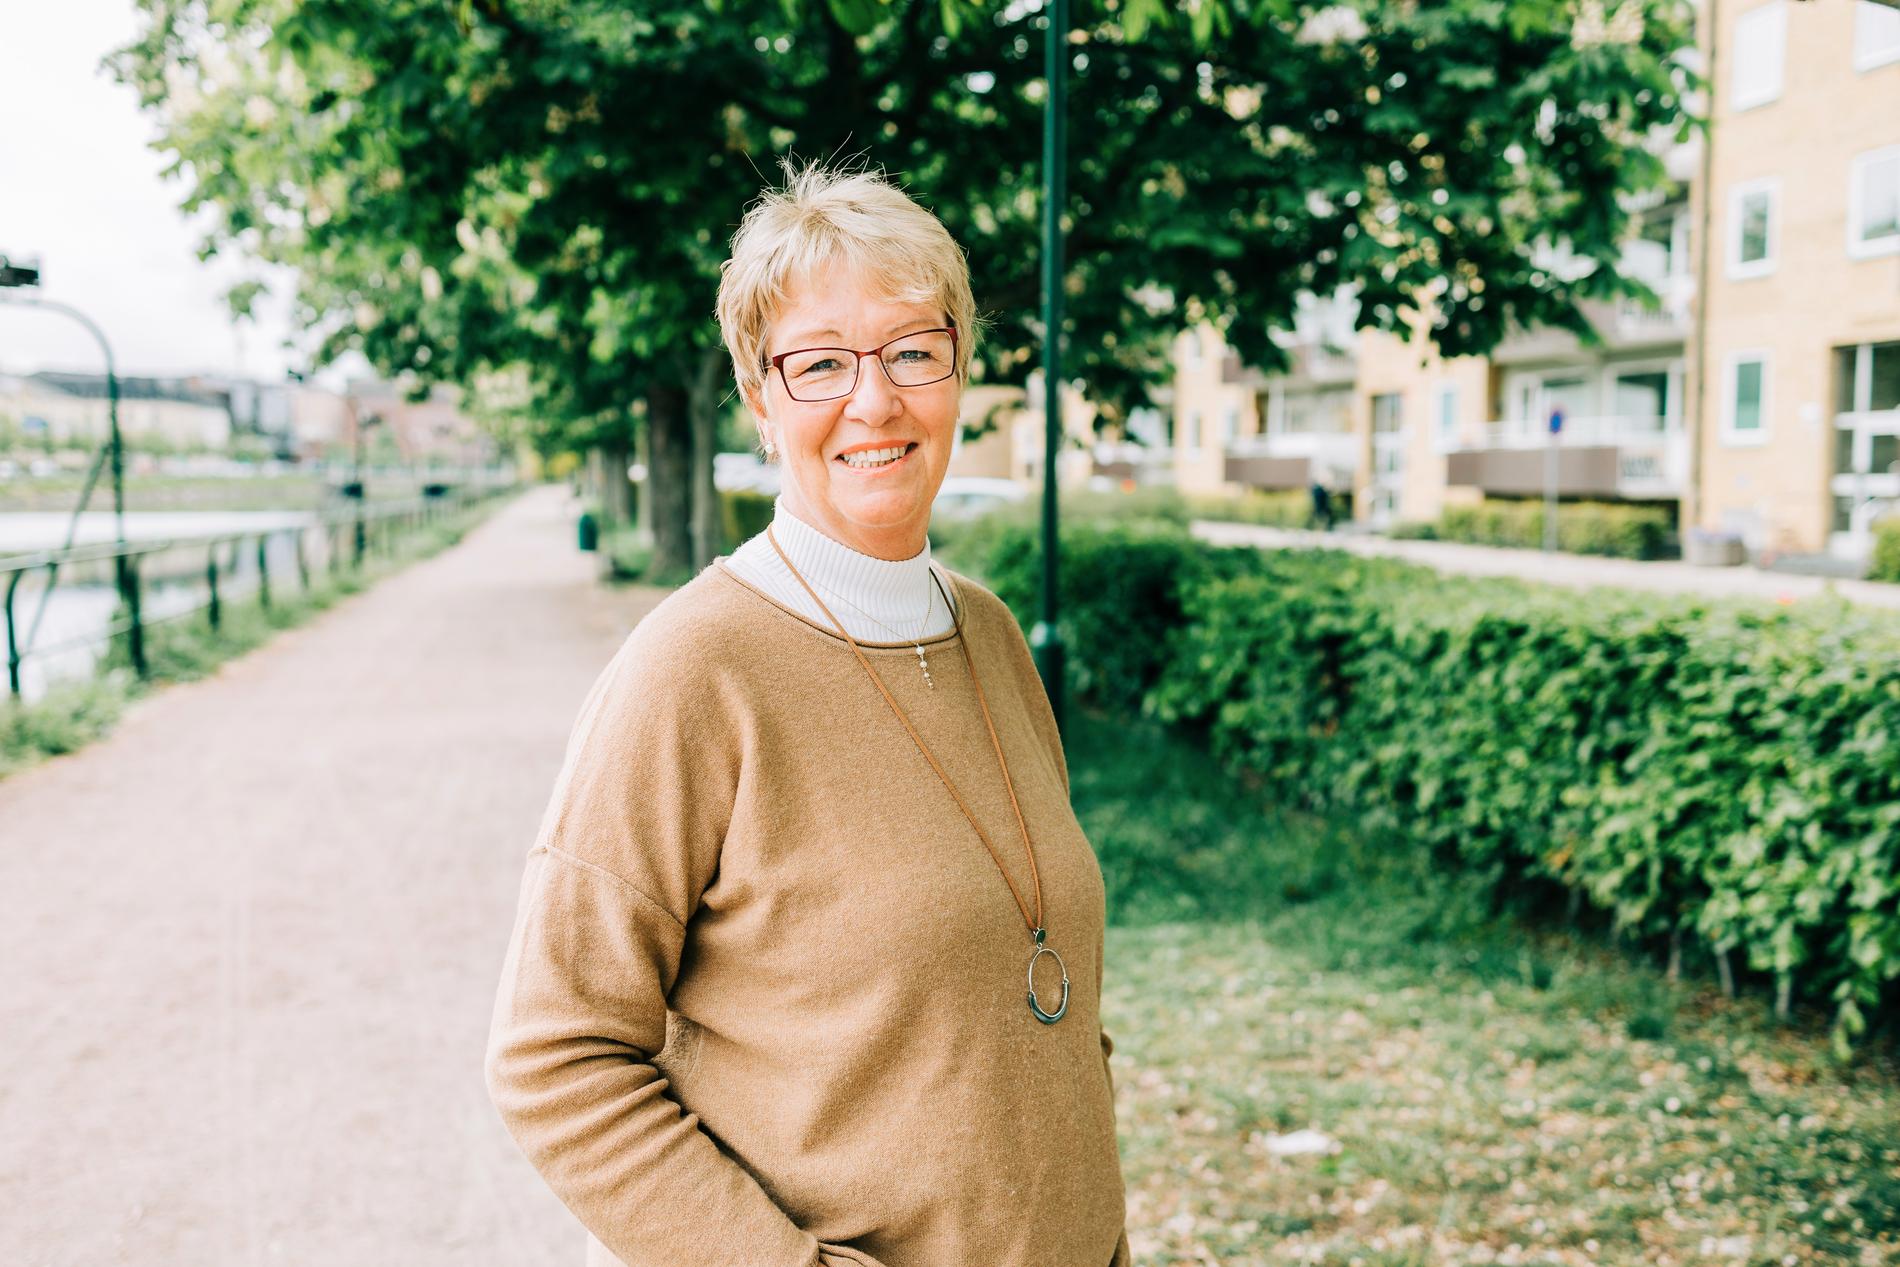  Pia Nilsson är enhetschef på Malmö stads hälsa-, vård- och omsorgsförvaltning. Hon betonar vikten av att besöken sker under säkra former nu när besöksförbudet på äldreboenden hävs.